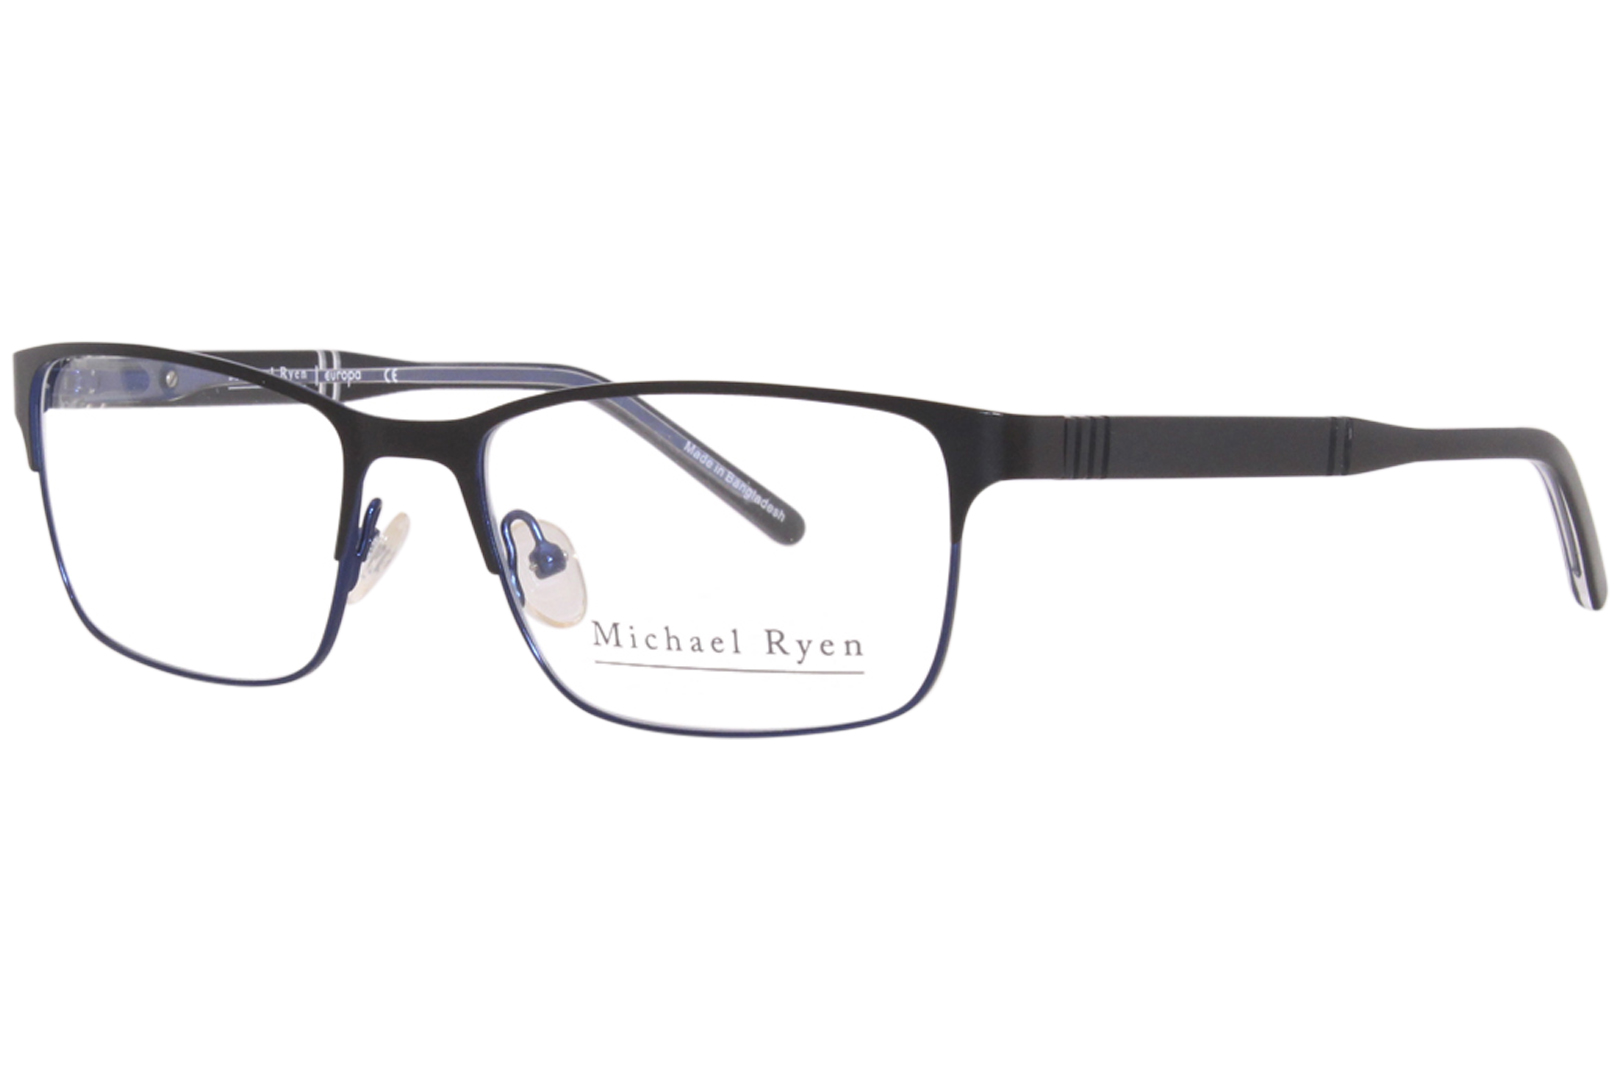 Michael Ryen MR-264 Eyeglasses Men's Full Rim Rectangle Shape ...